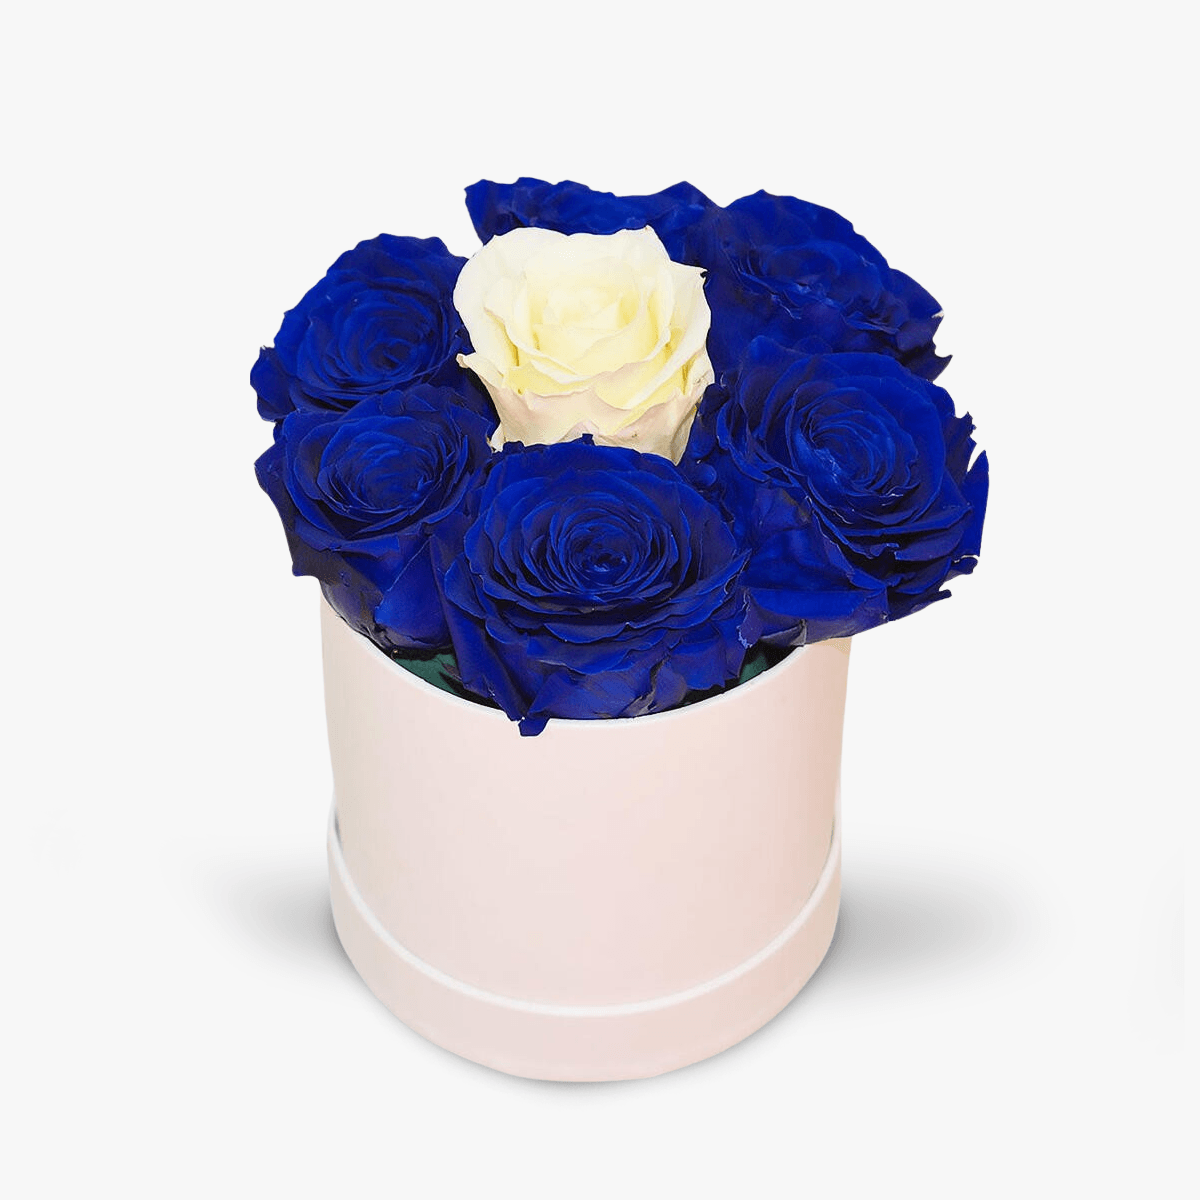 Cutie cu 7 trandafiri, albastri si albi, criogenati – Standard albastri